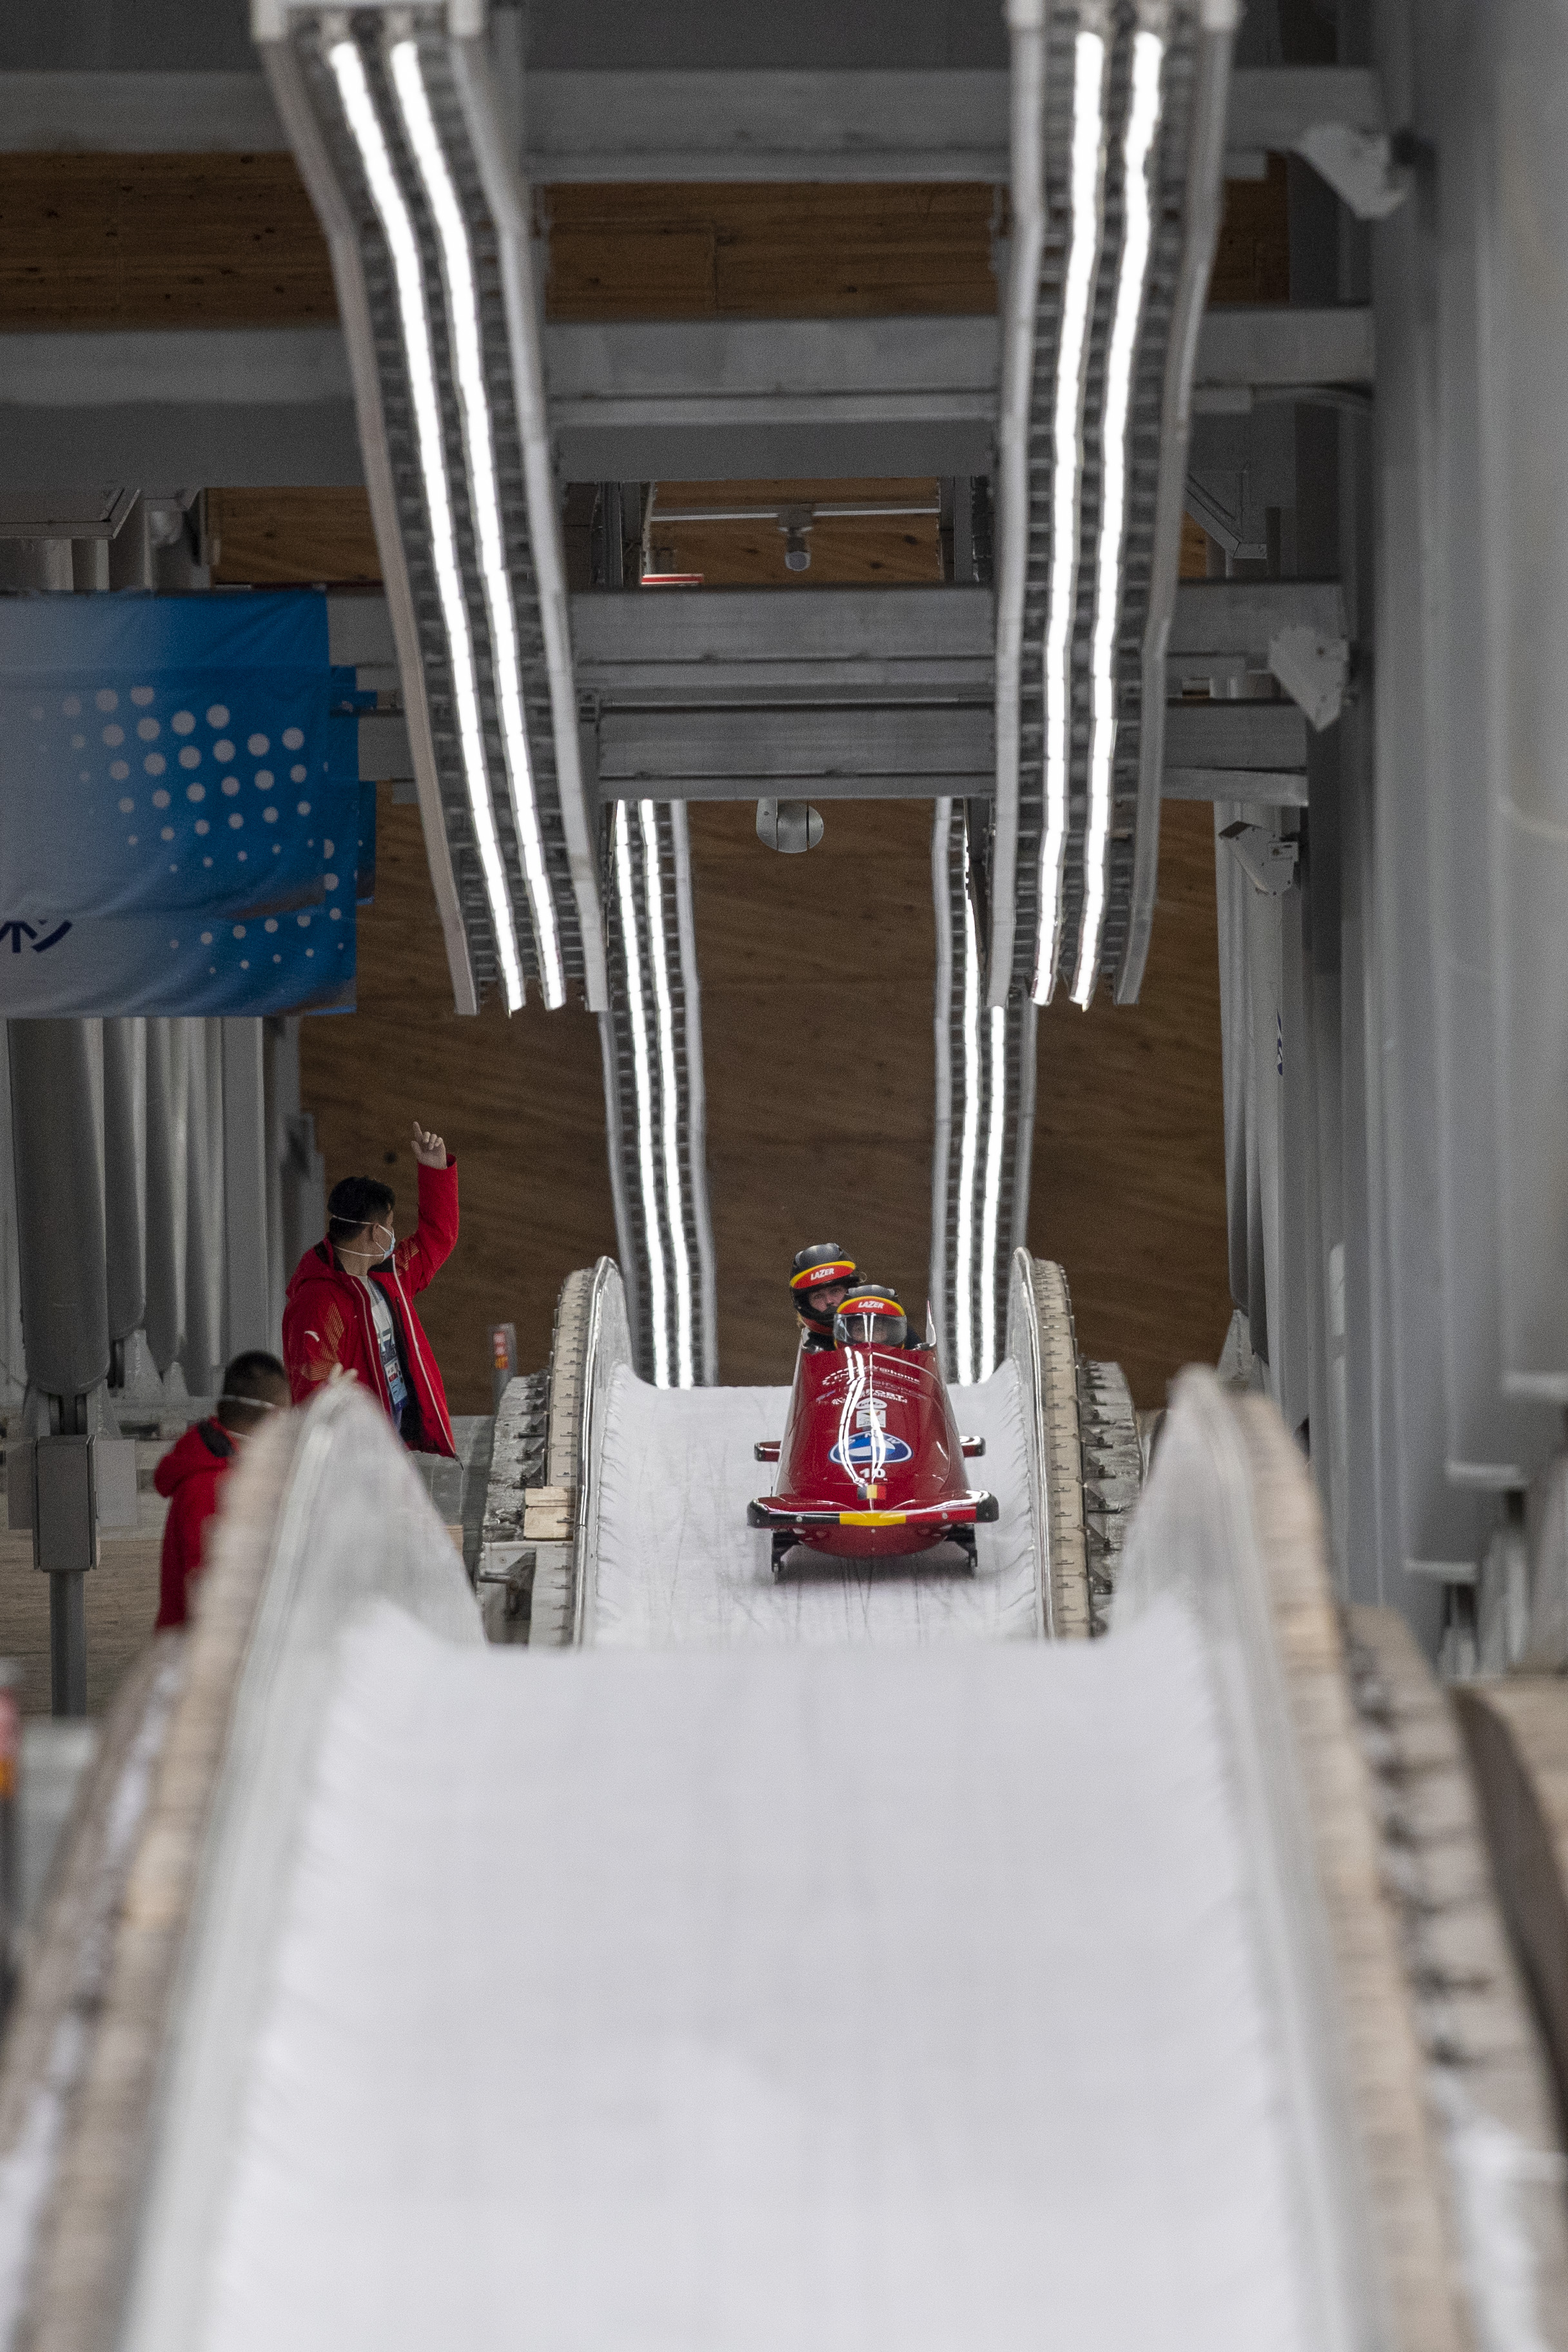 24国运动员体验国家雪车雪橇赛道,北京冬奥开启场馆测